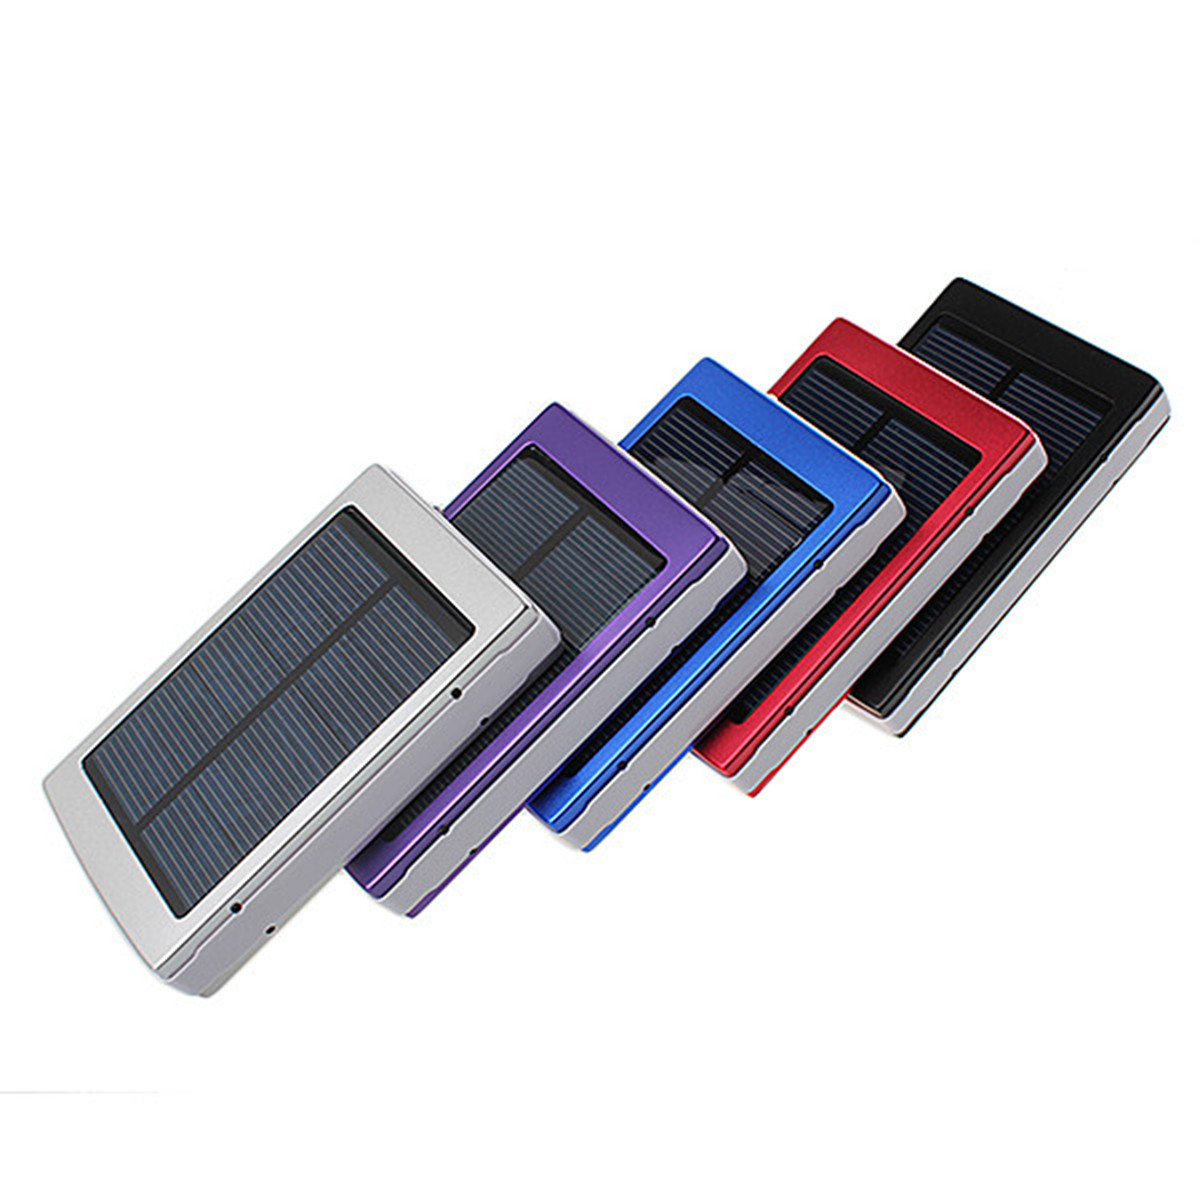  Портативный Солнечная Панель Dual USB Внешний Мобильный Батарея Power Bank Pack Зарядное Устройство для iPhone HTC